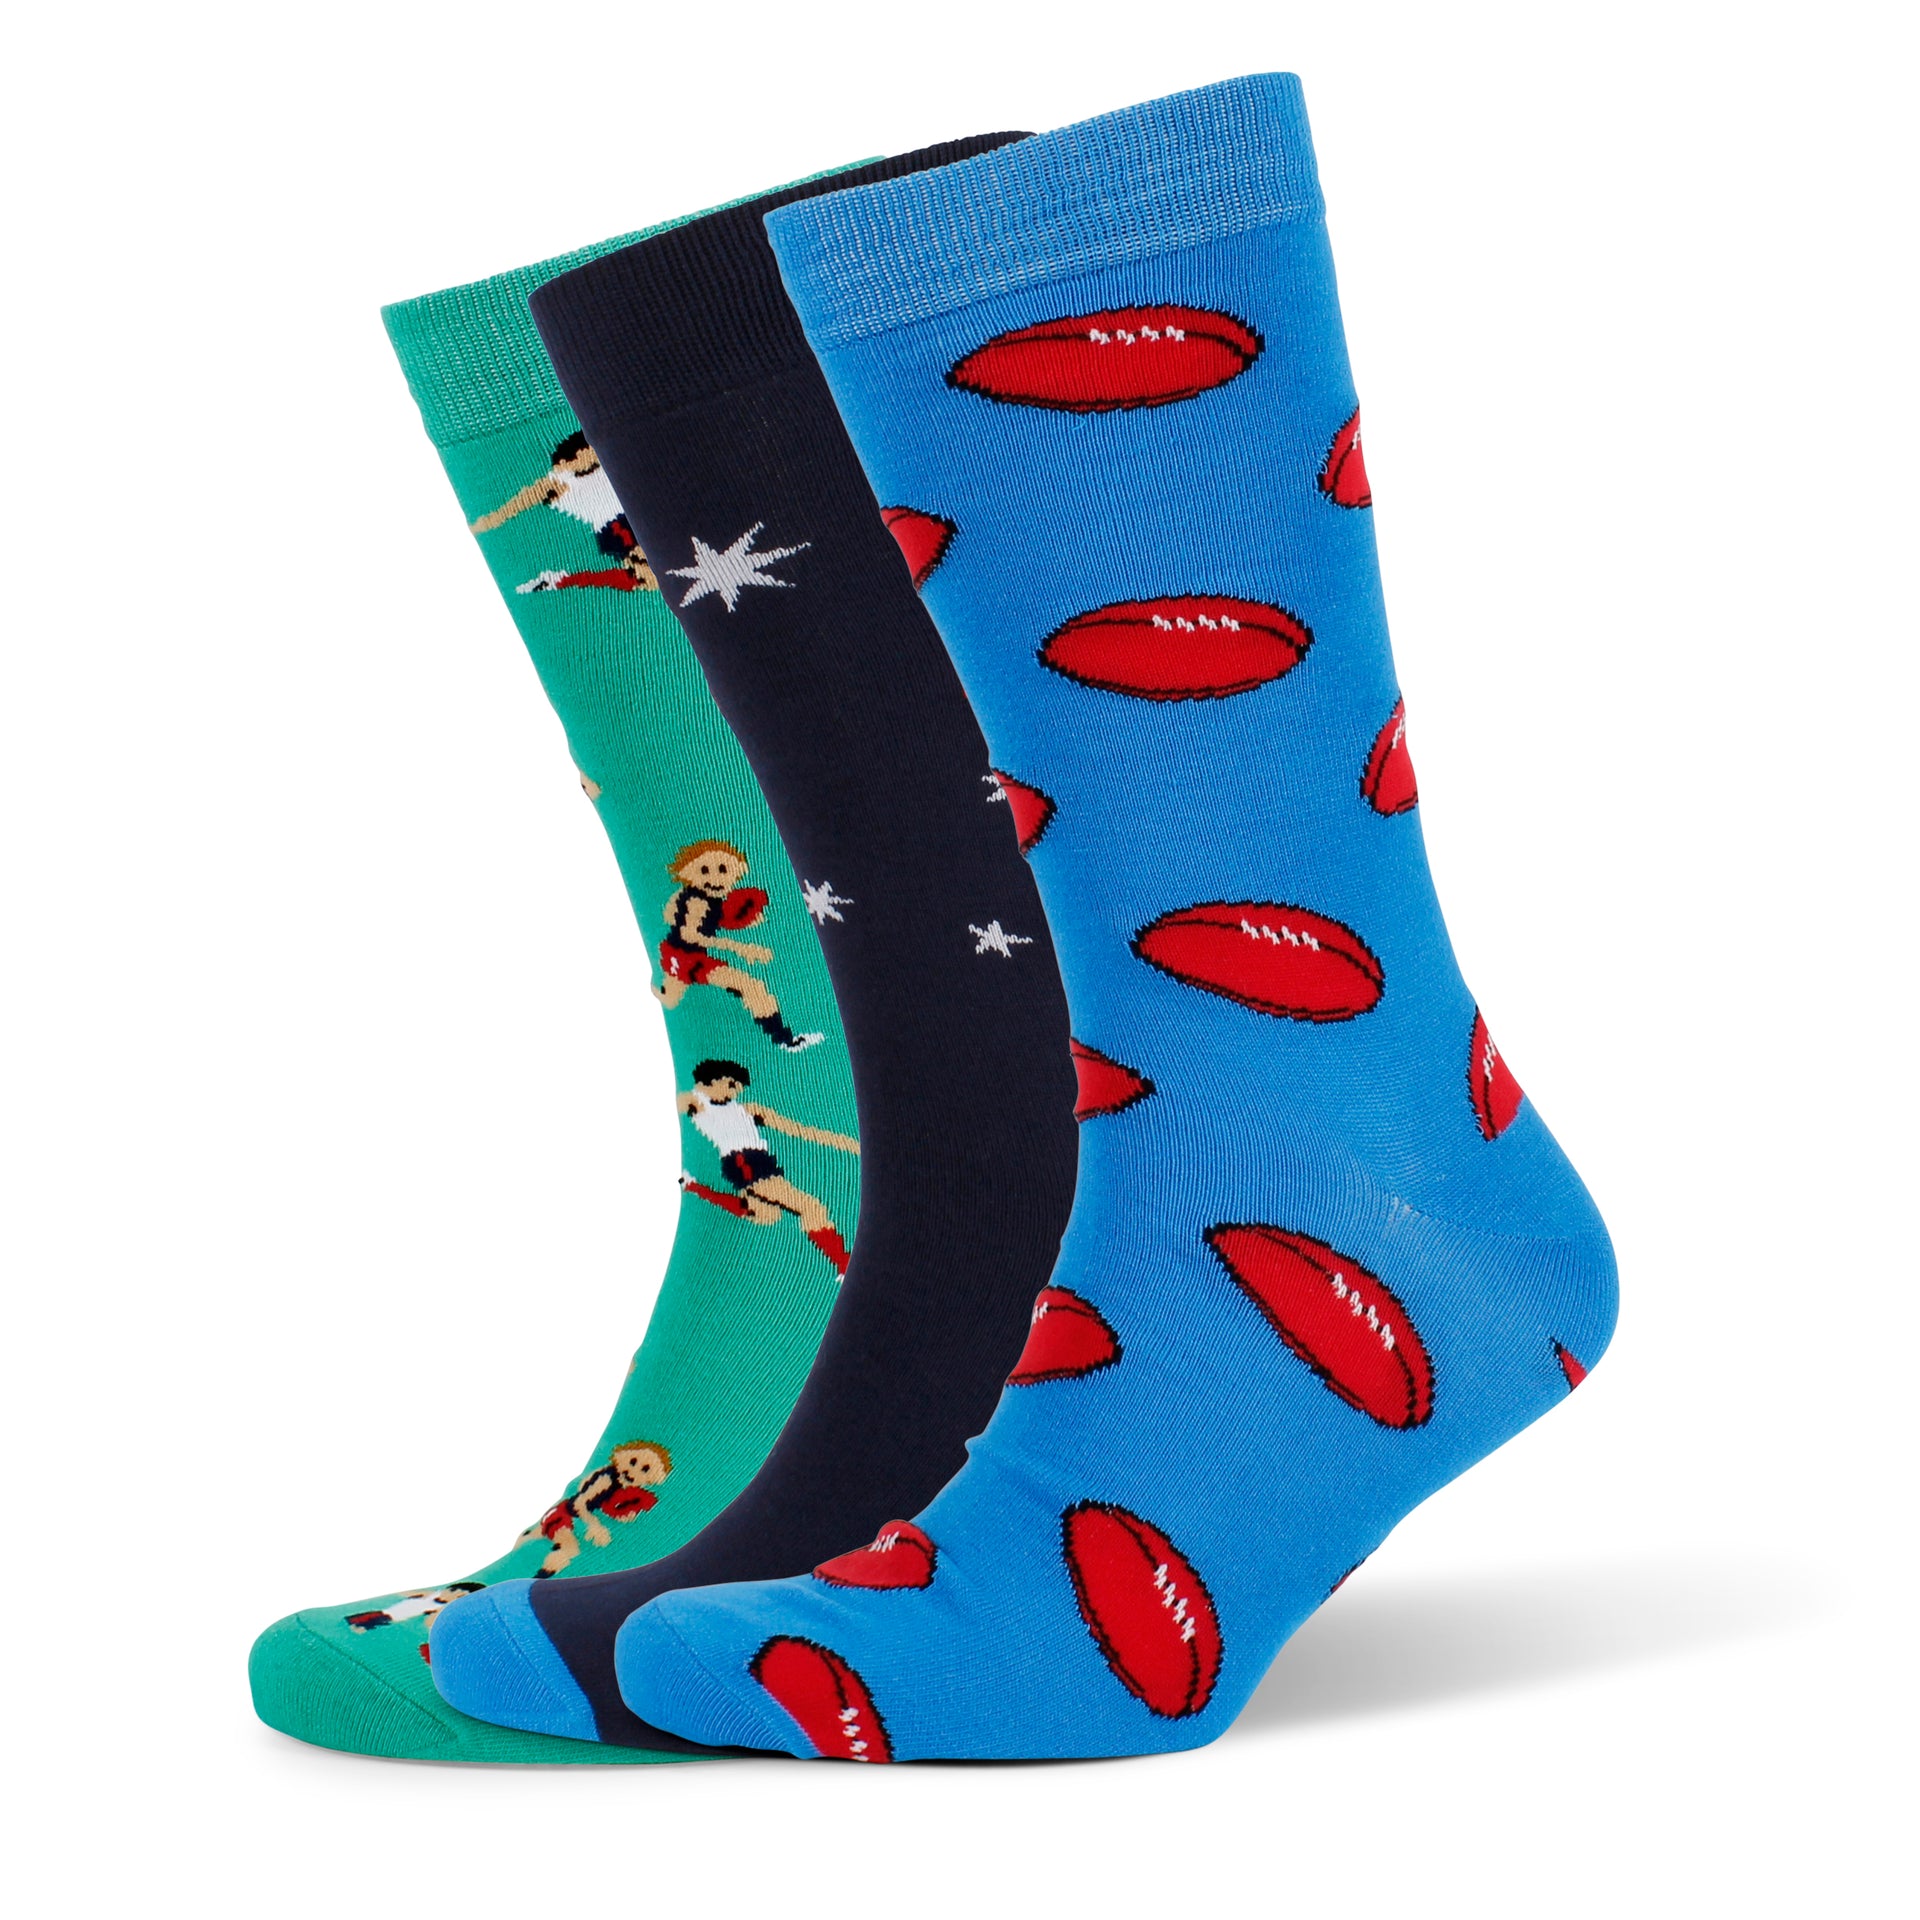 Men's Socks - Footy 3 Pack Gift Box